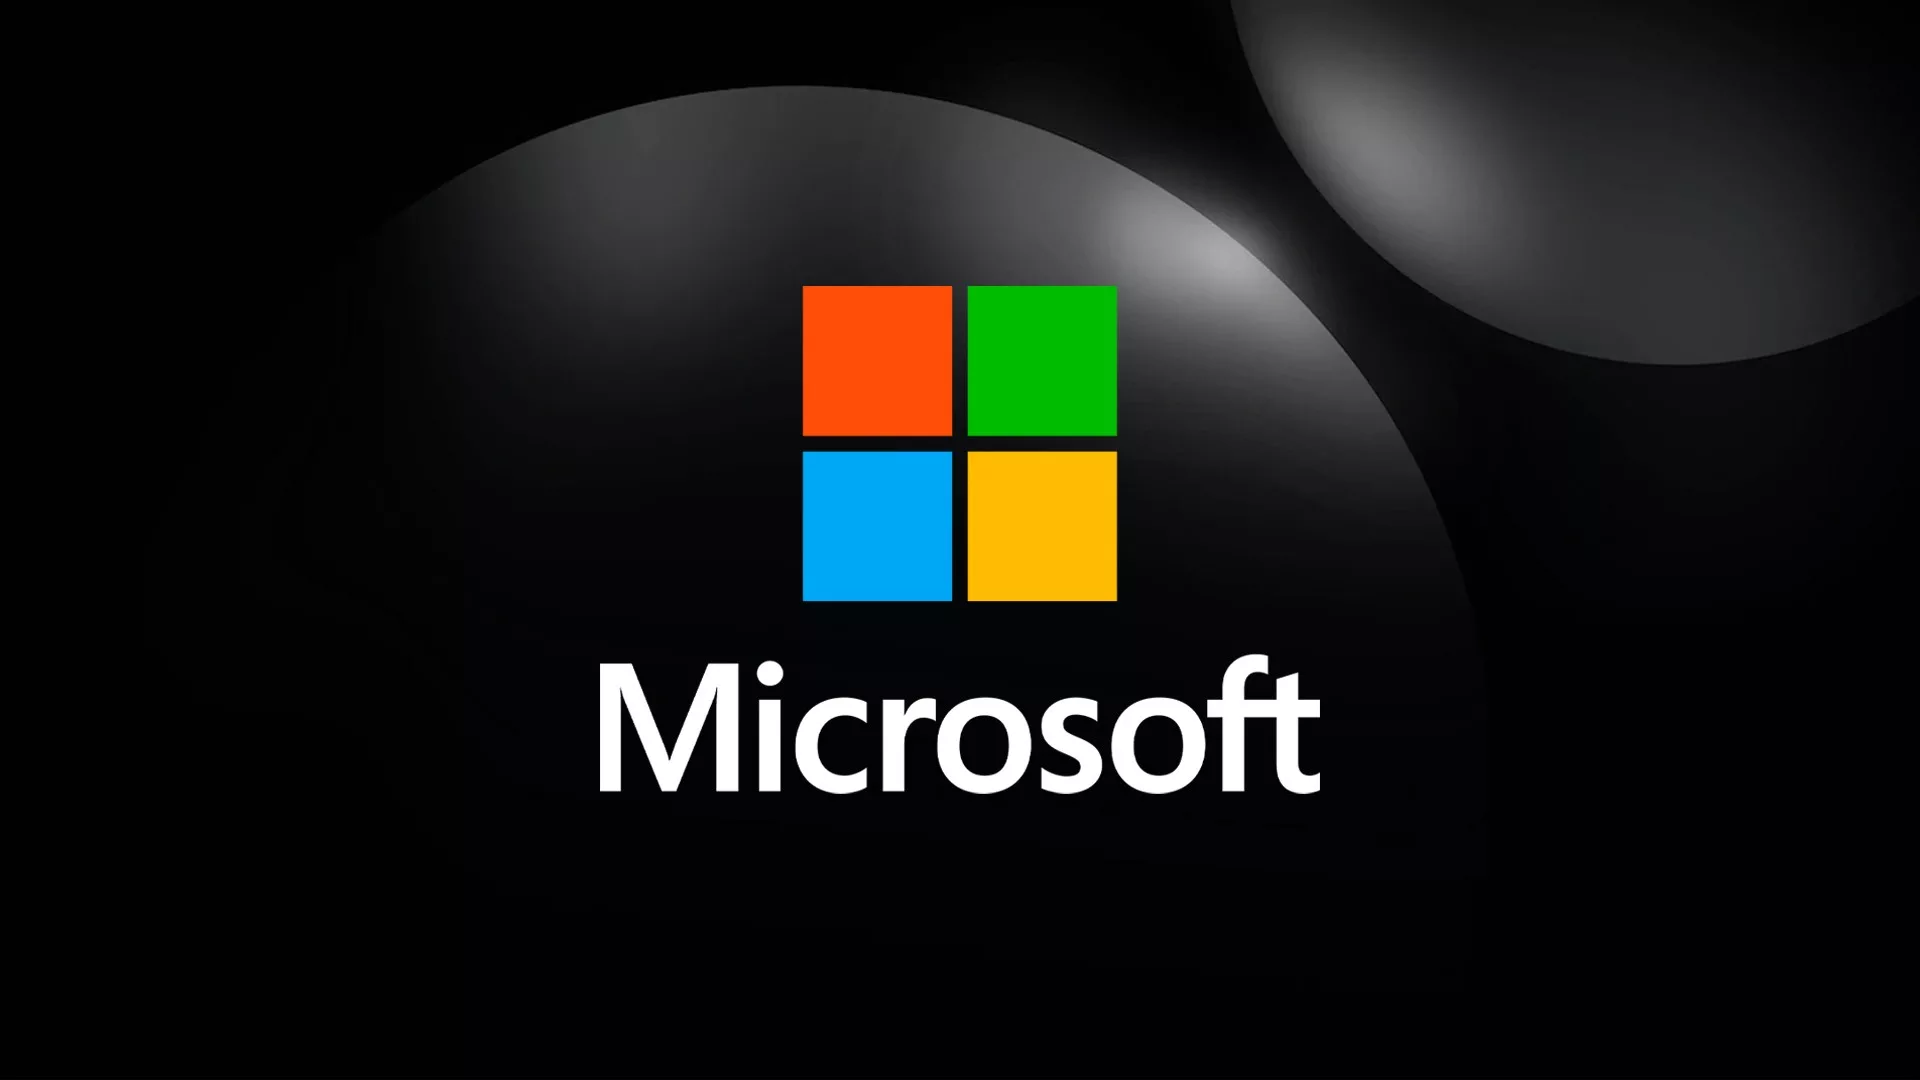 Microsoft Enfrenta Críticas Severas por Segurança “Gravemente Irresponsável”